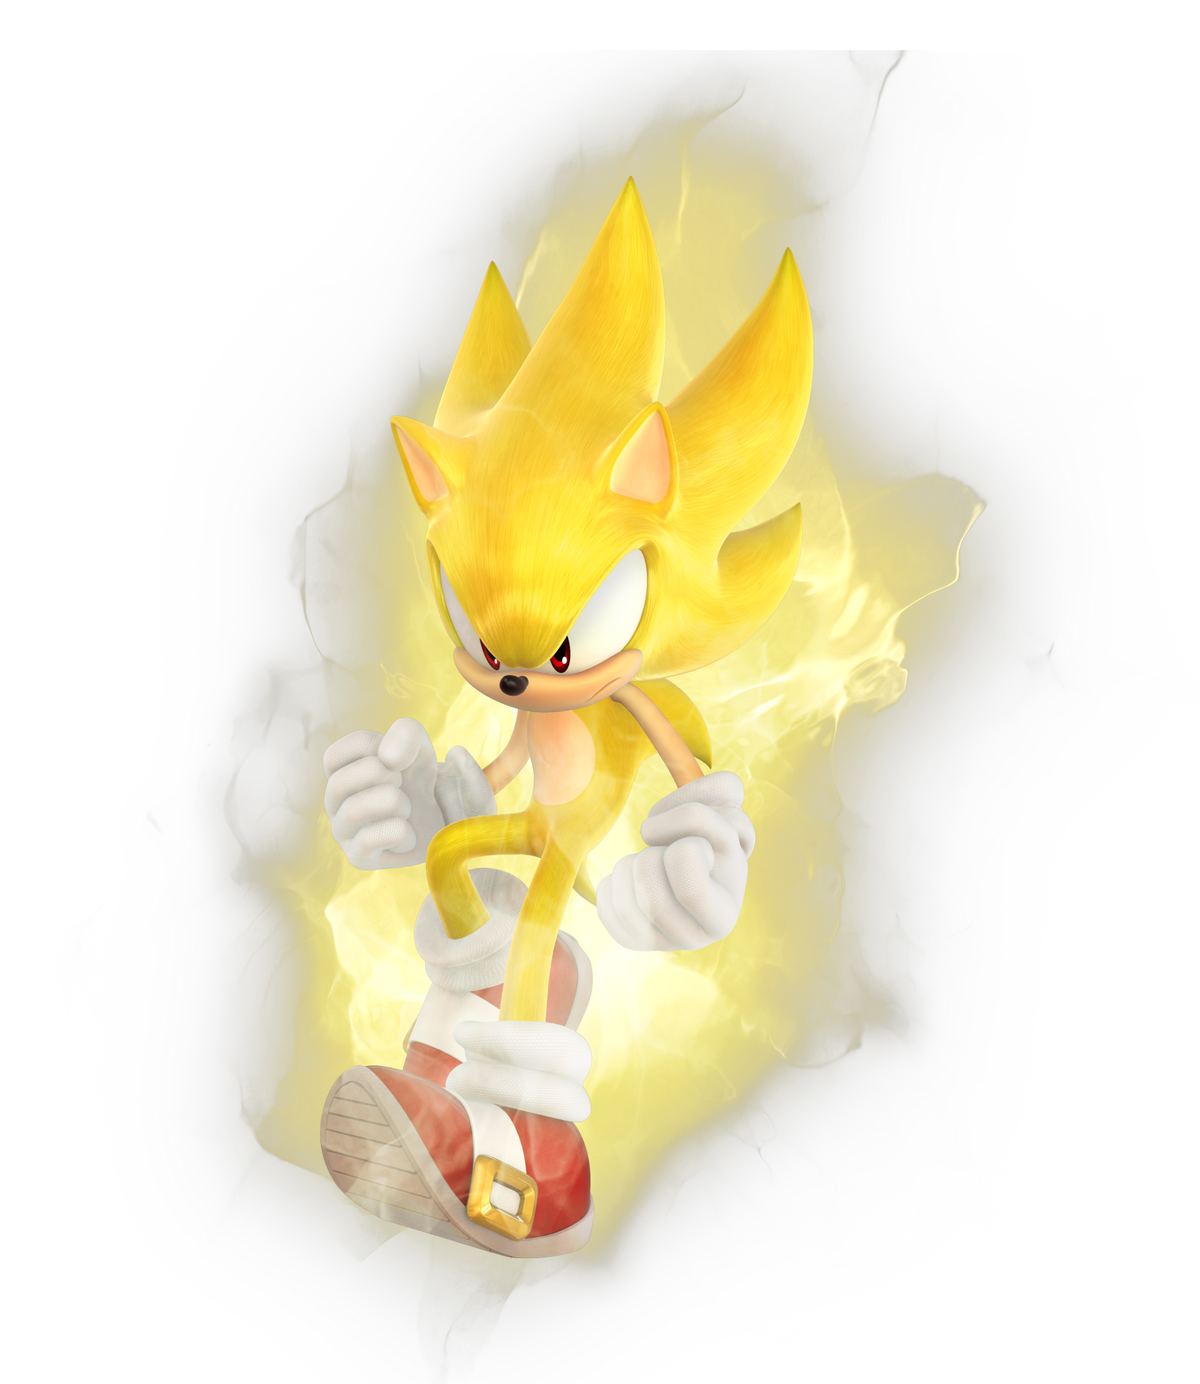 Dark Super Sonic, Sonic Pokémon Wiki